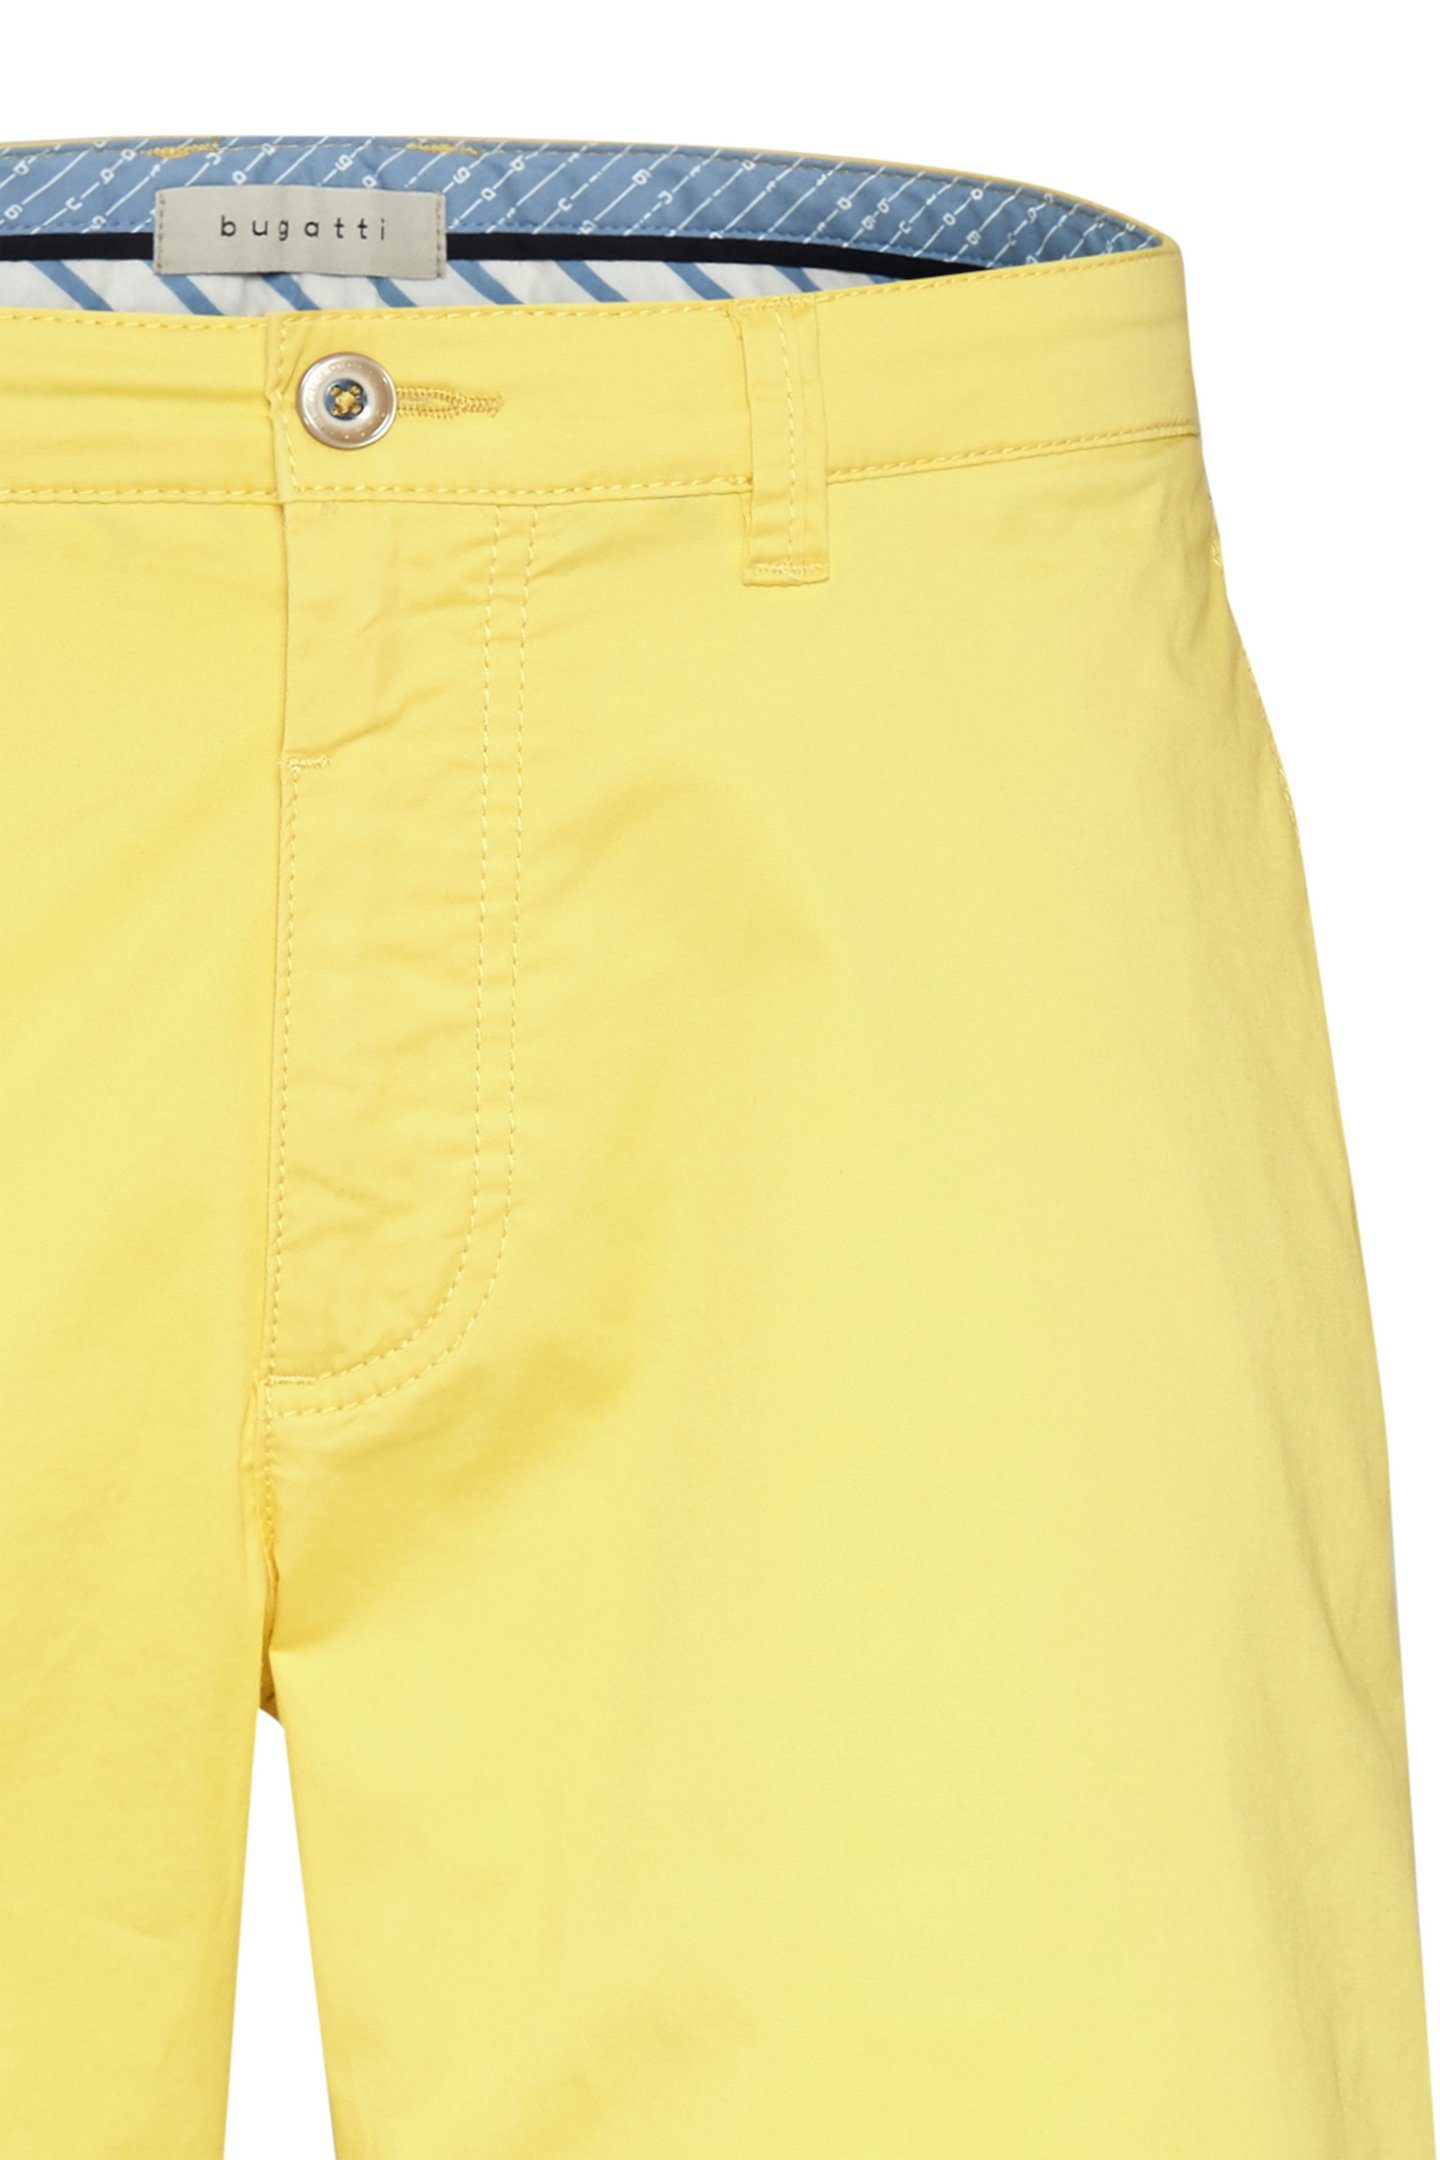 bugatti Shorts in cleanen einem gelb Look